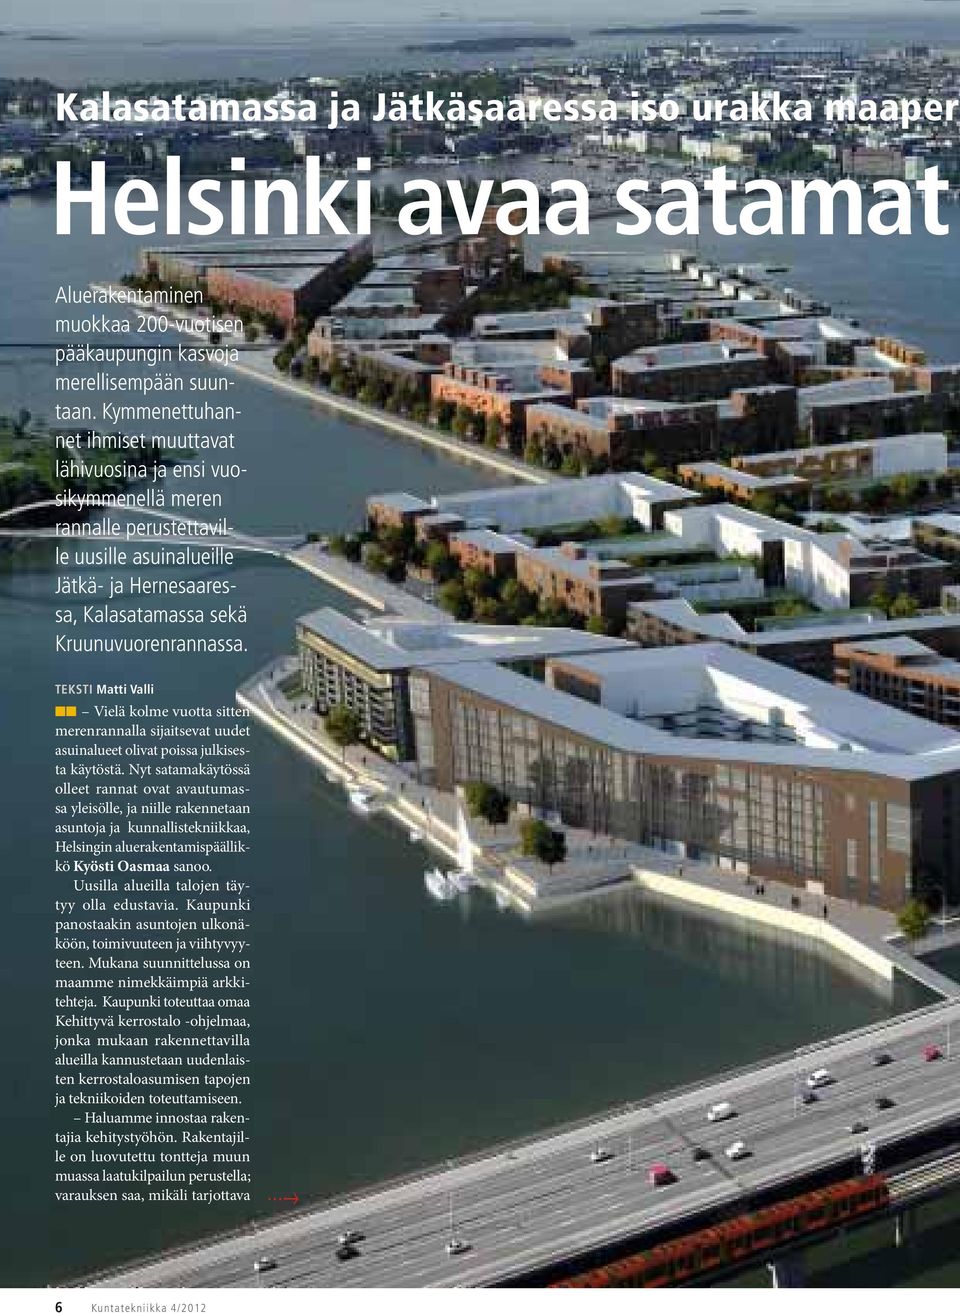 TEKSTI Matti Valli Vielä kolme vuotta sitten merenrannalla sijaitsevat uudet asuinalueet olivat poissa julkisesta käytöstä.